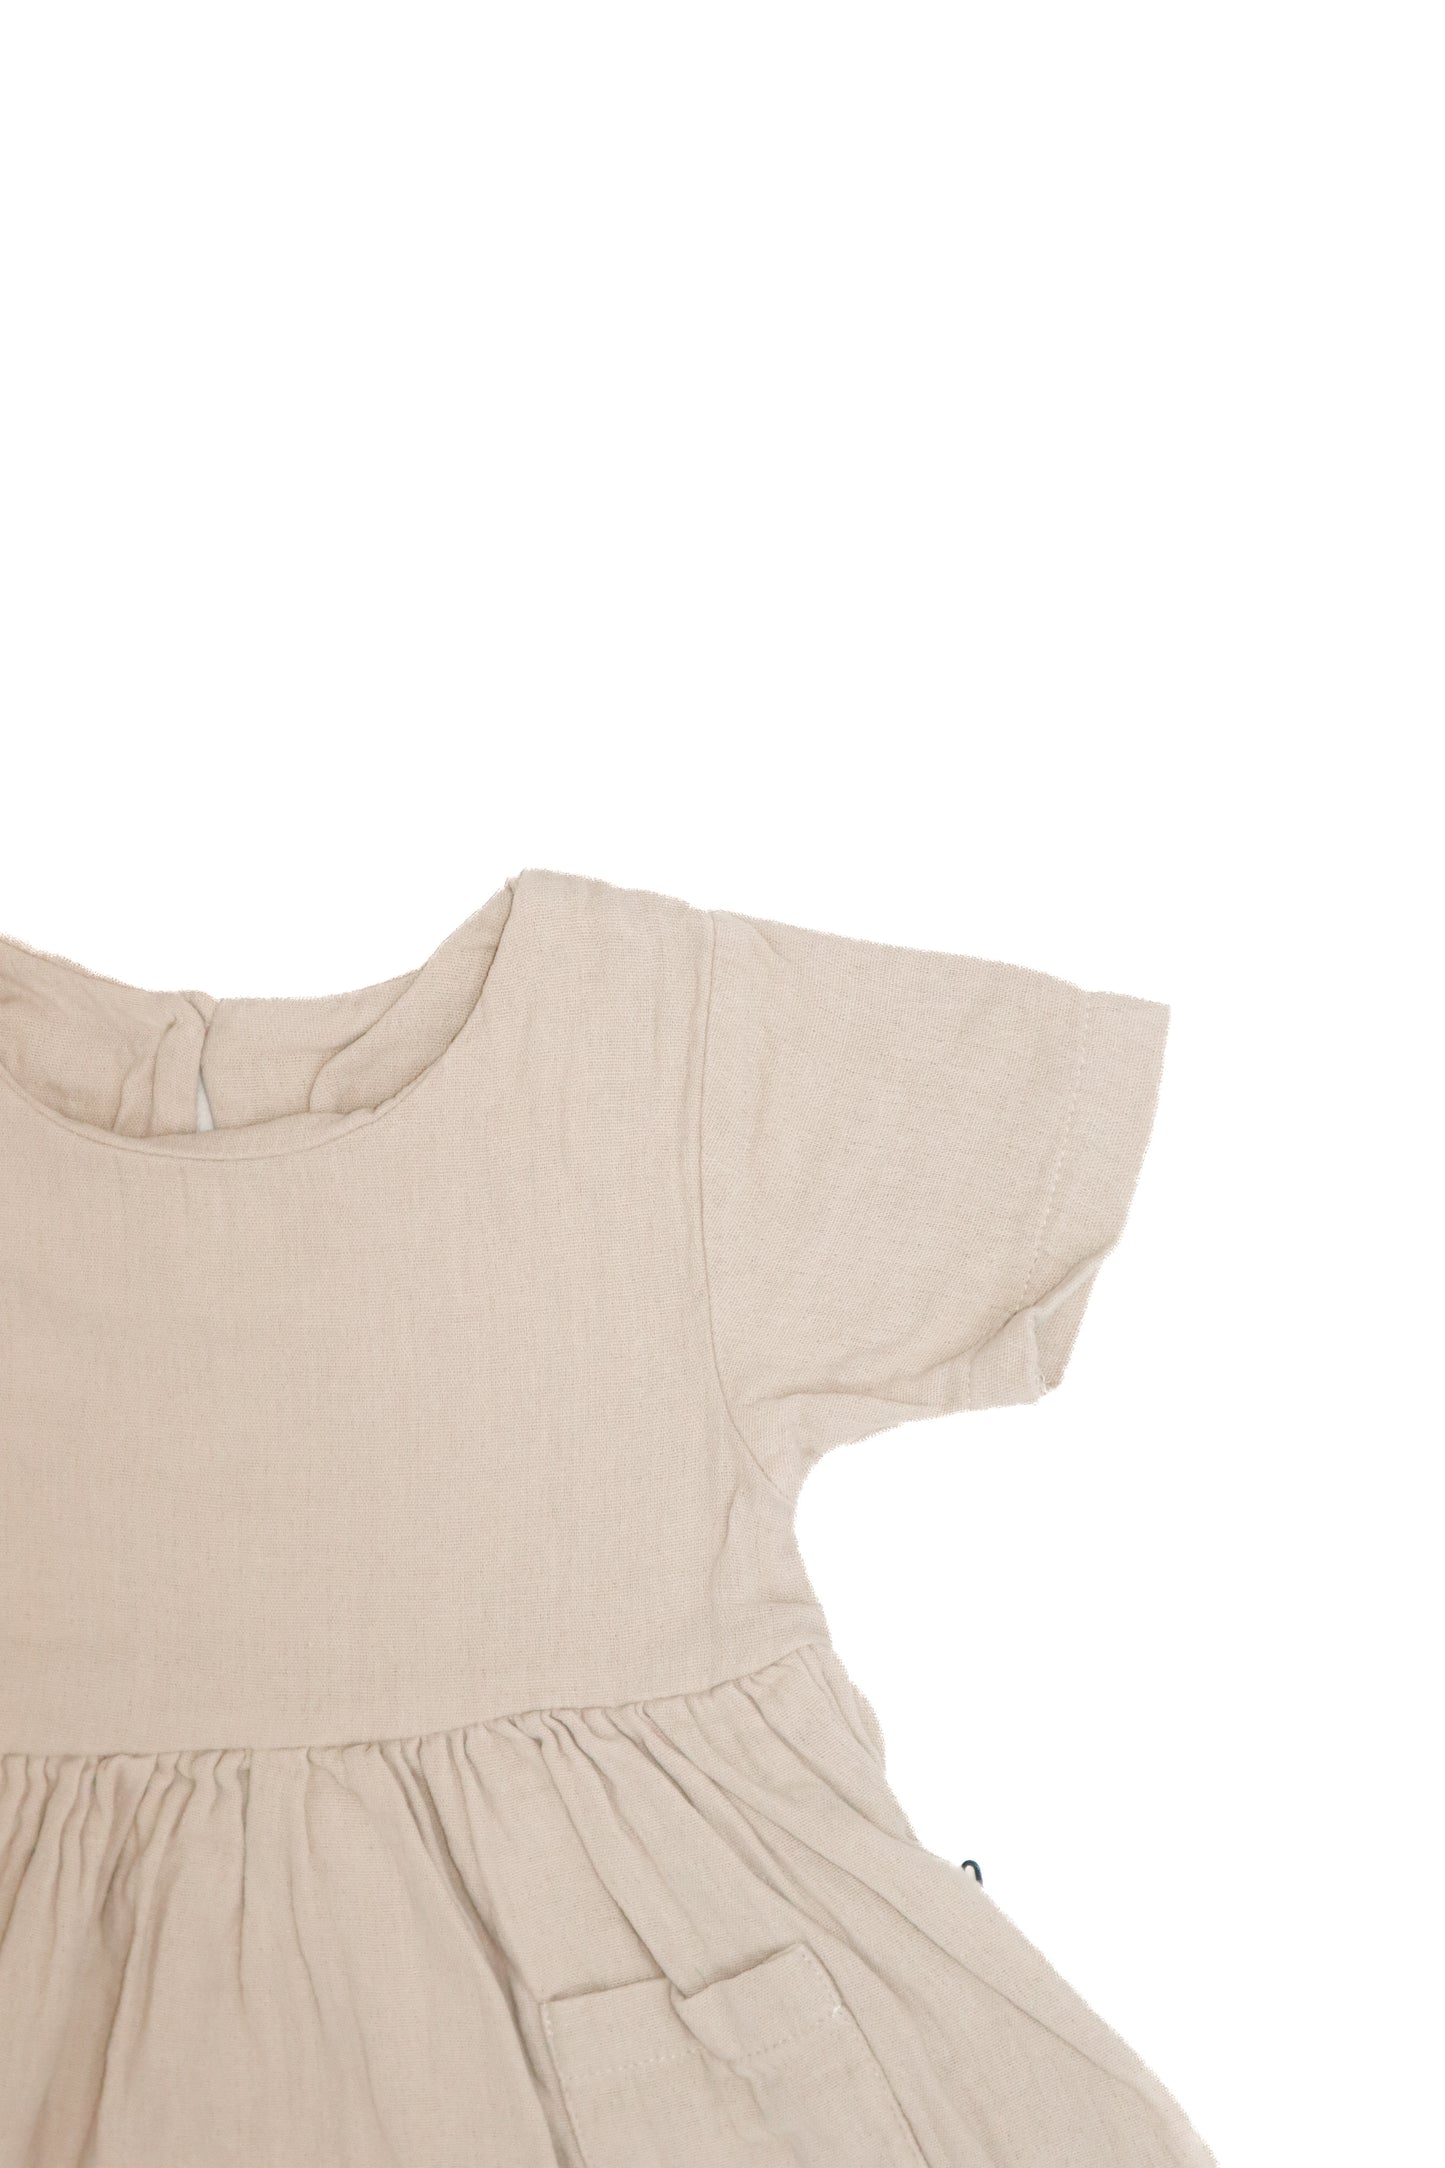 Детское платье с воротником и повязка на голову из 100% органического муслина